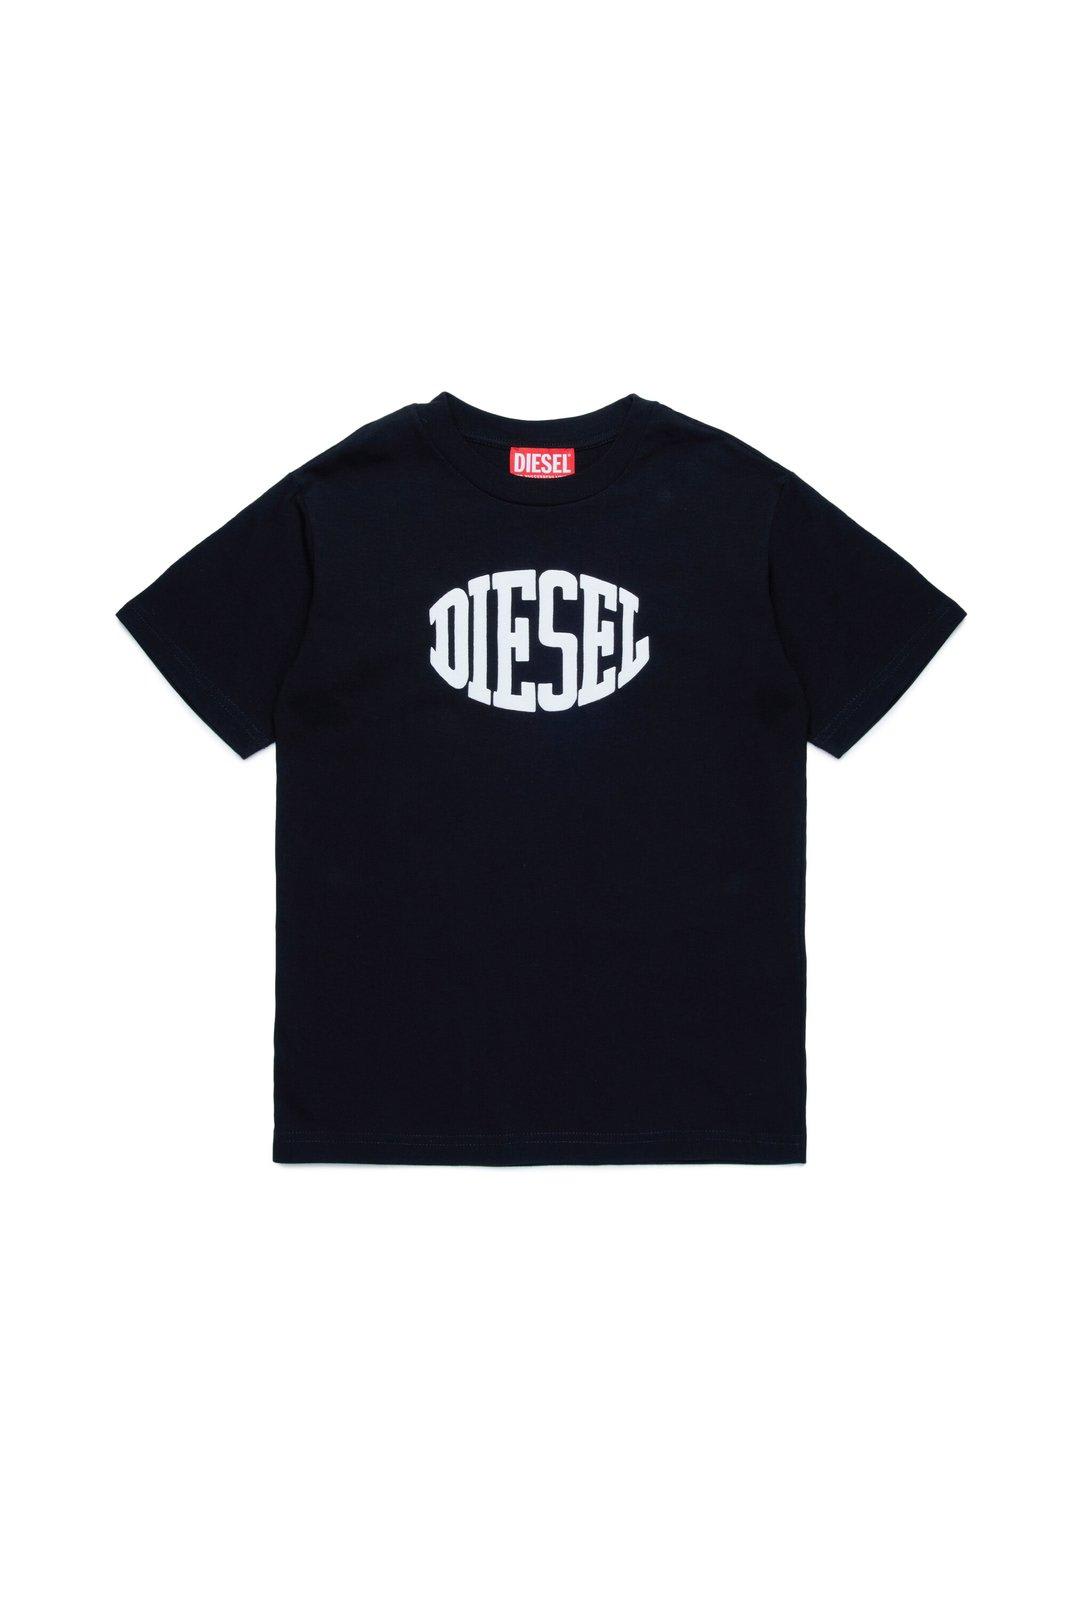 Diesel Kids' Tmust Over Logo Printed T-shirt In Black